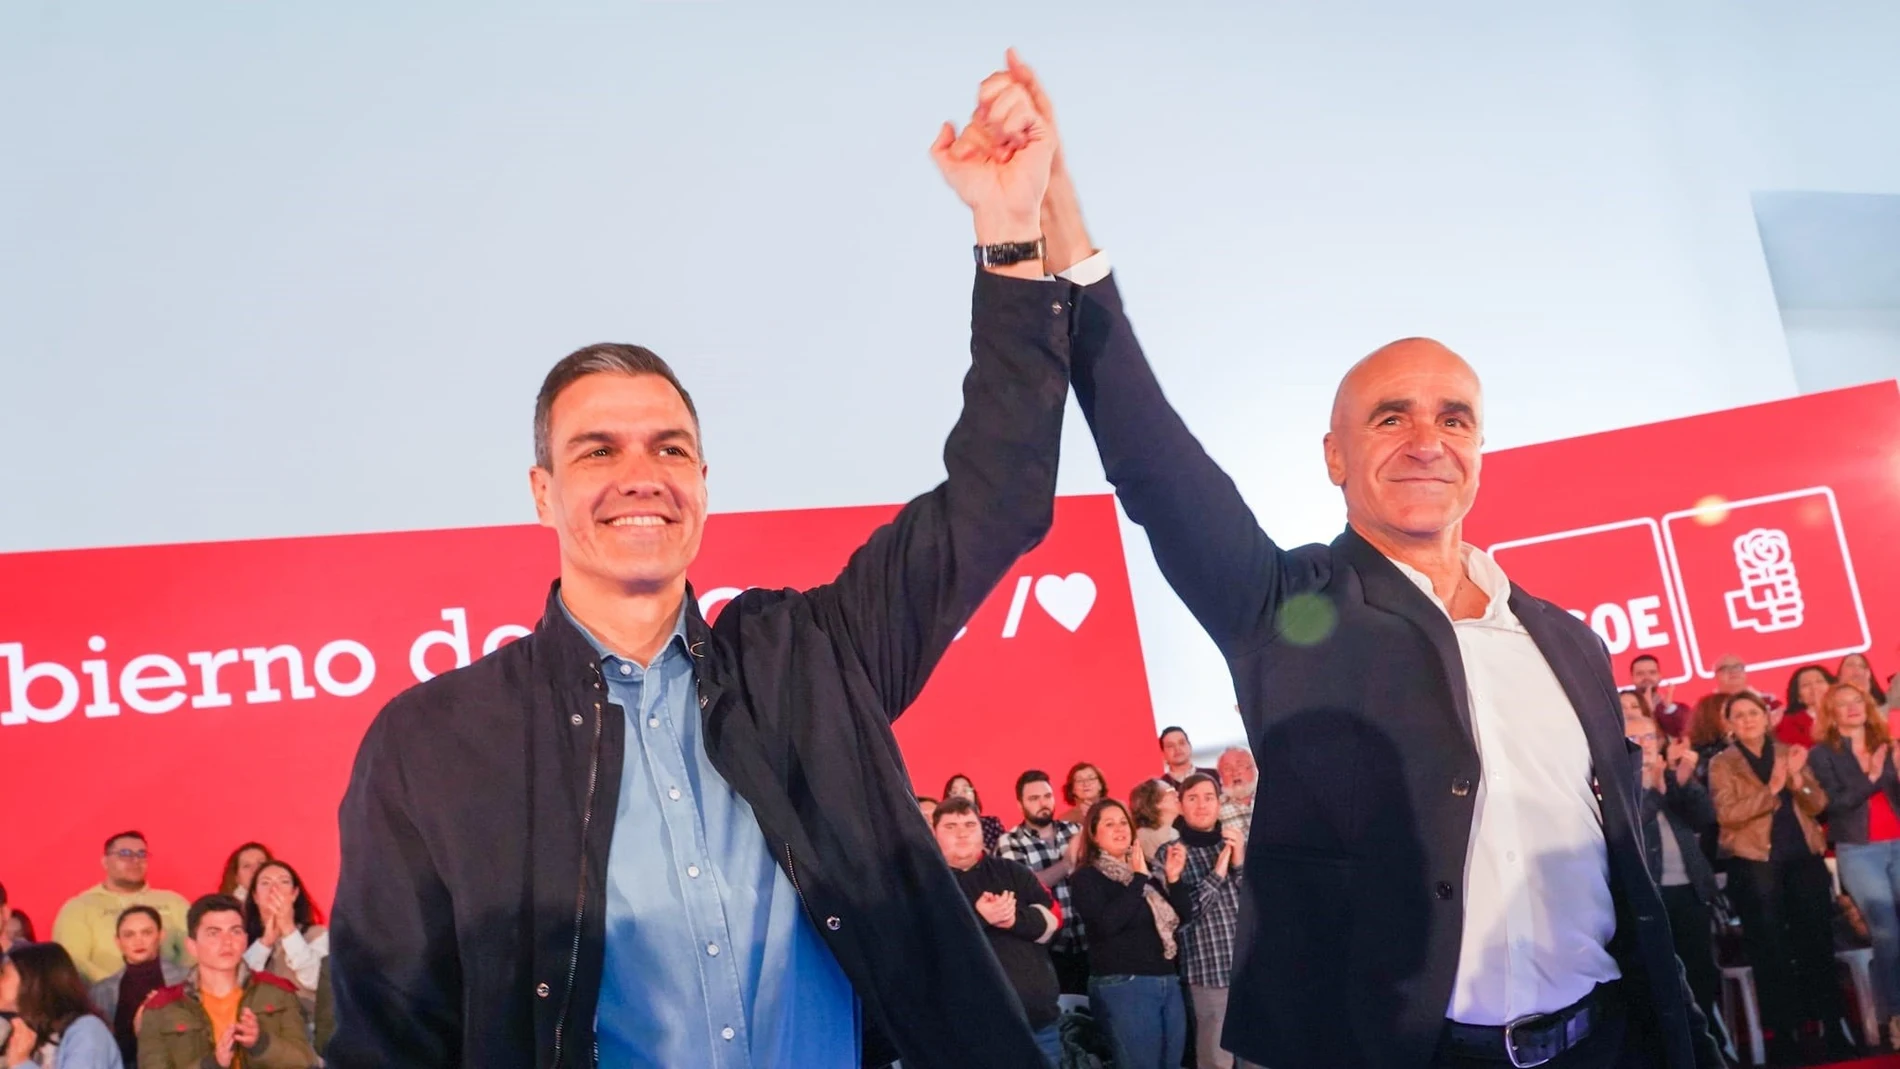 El alcalde de Sevilla, Antonio Muñoz, participa en un acto público de partido junto el secretario general del PSOE y presidente del Gobierno, Pedro Sánchez